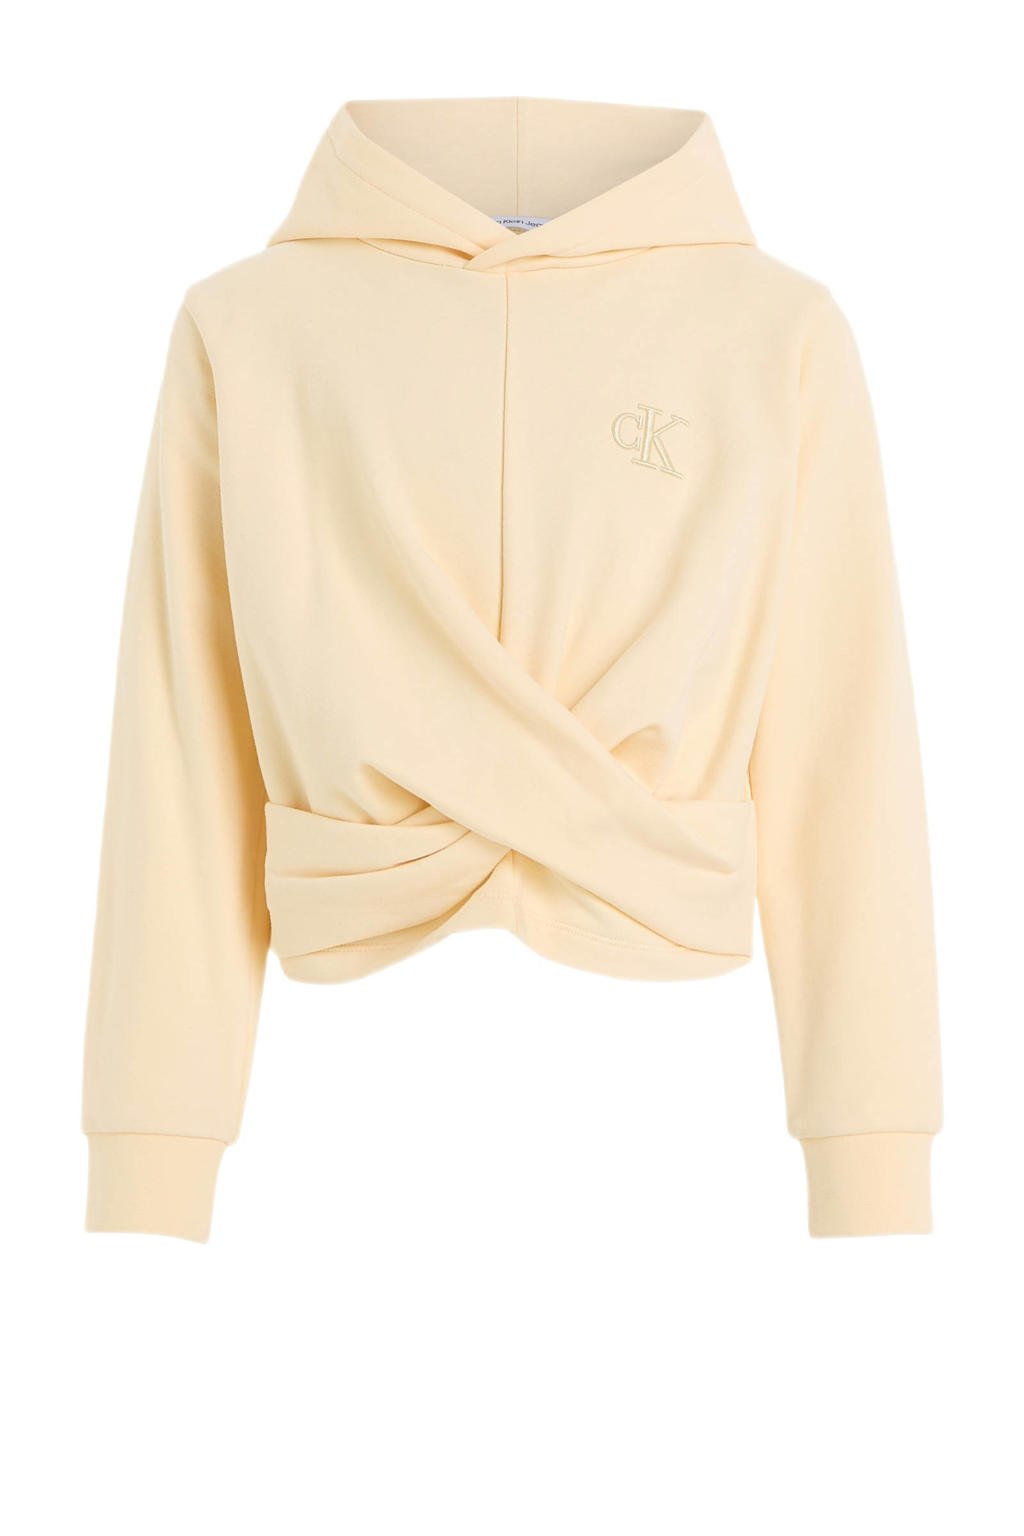 Beige meisjes Calvin Klein hoodie van sweat materiaal met logo dessin, lange mouwen en capuchon